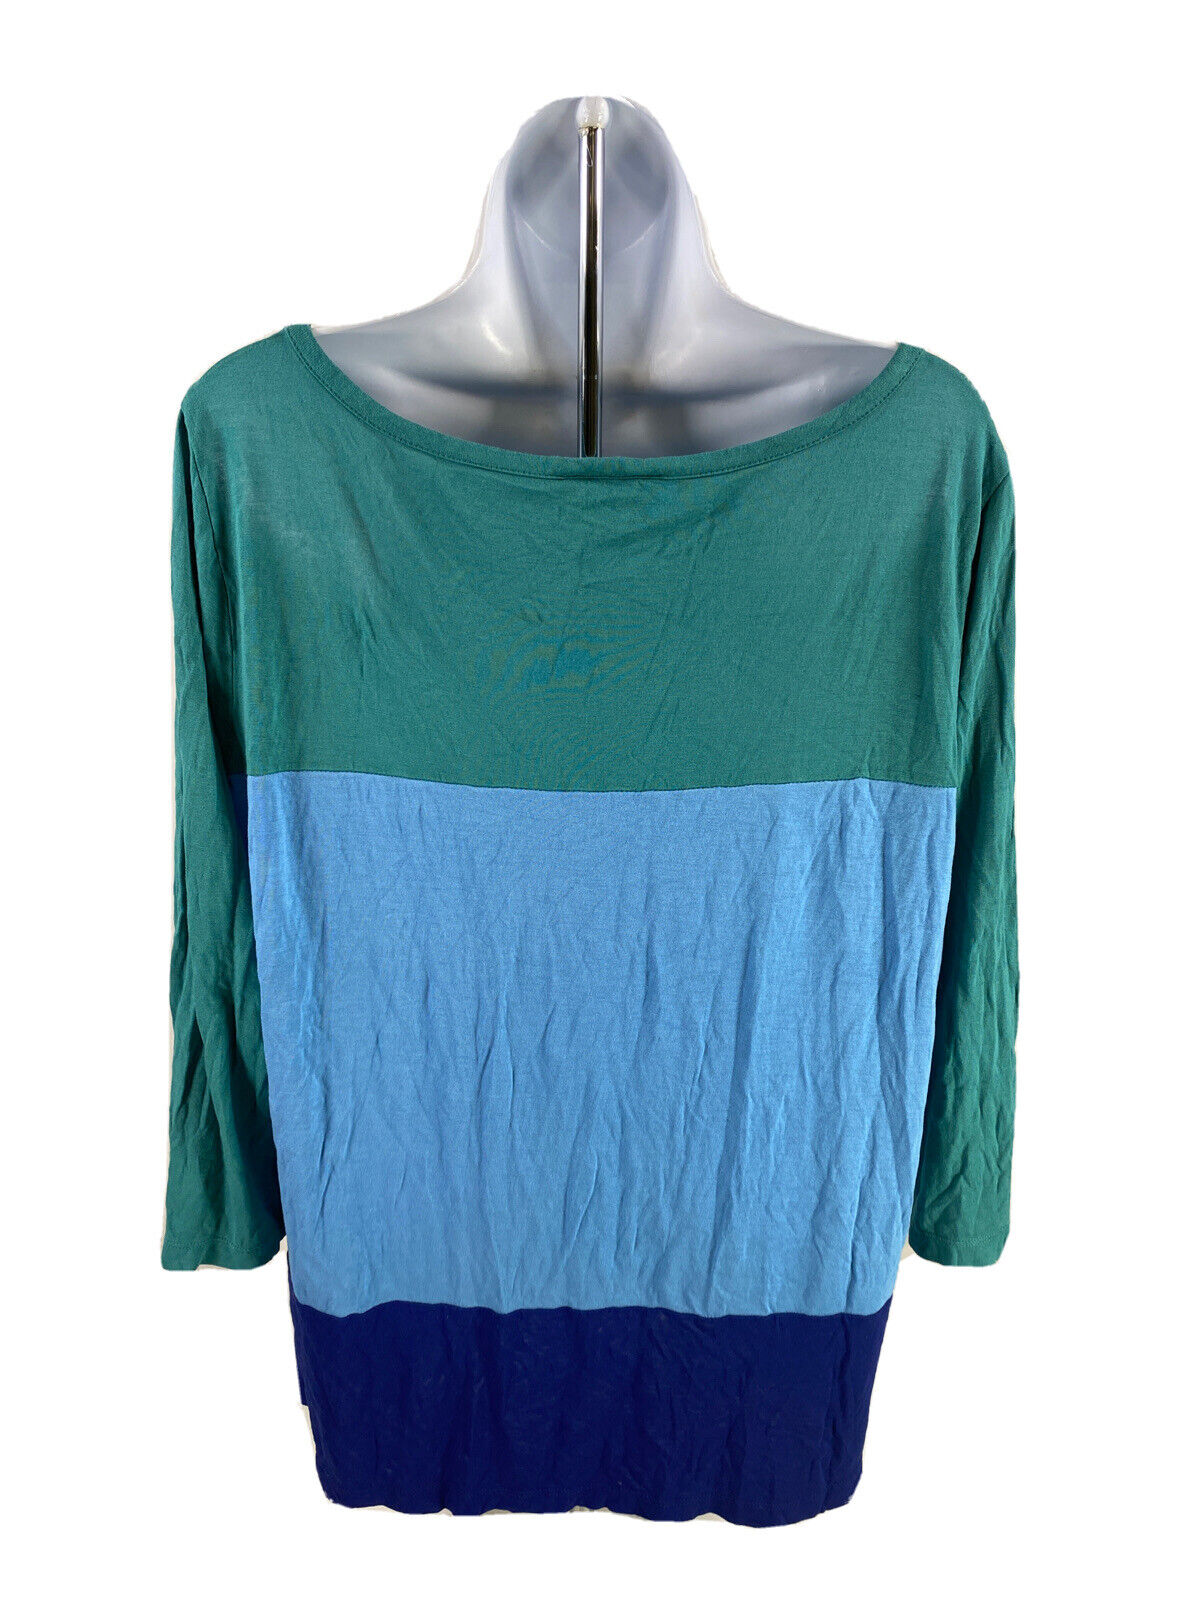 LOFT Women's Blue 3/4 Sleeve T-Shirt - XL